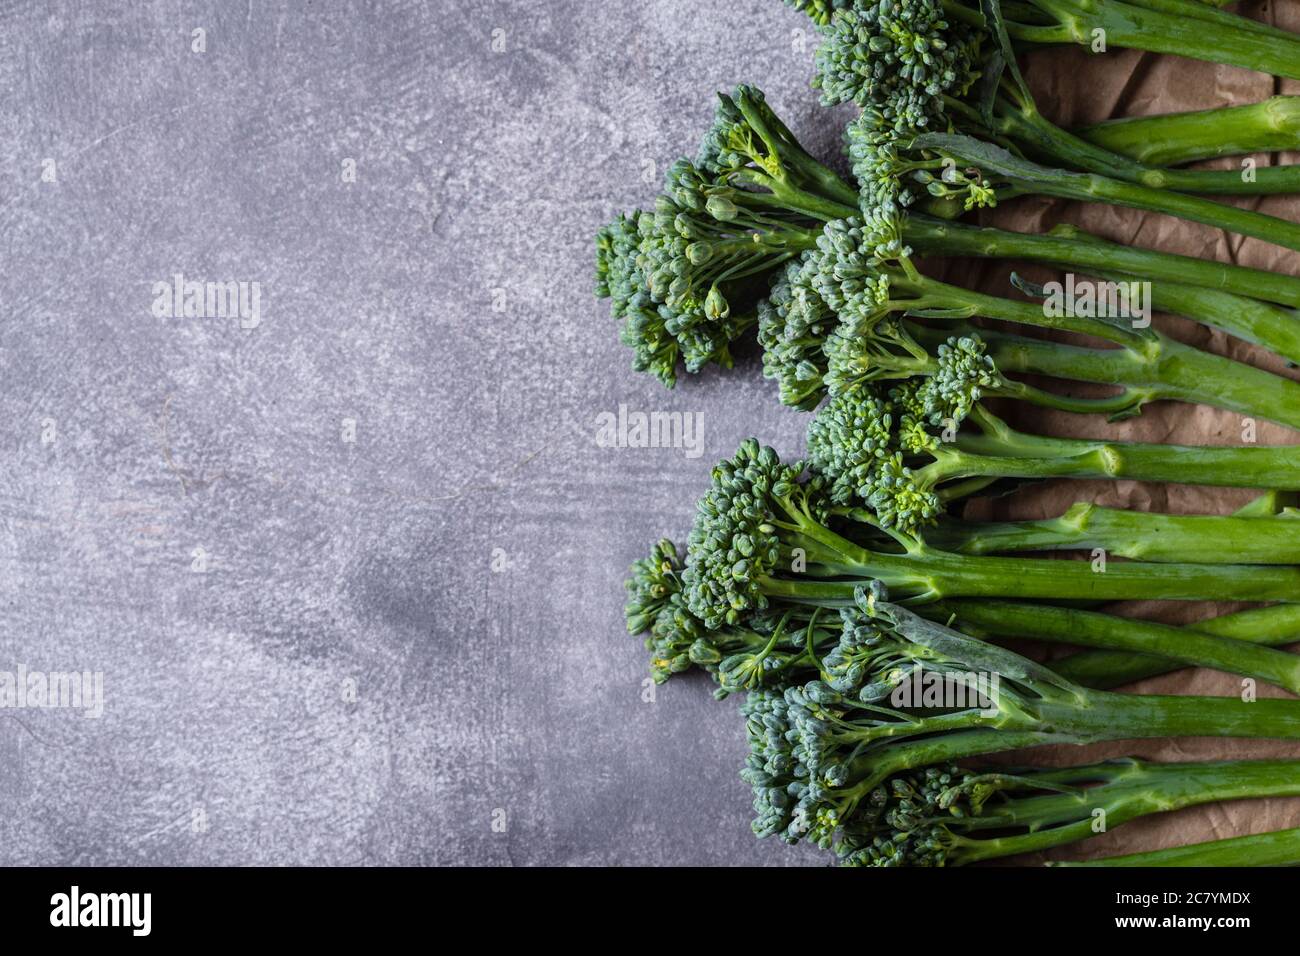 Bordo di broccolini su fondo grigio in pietra. Vista dall'alto con spazio per la copia. Foto Stock